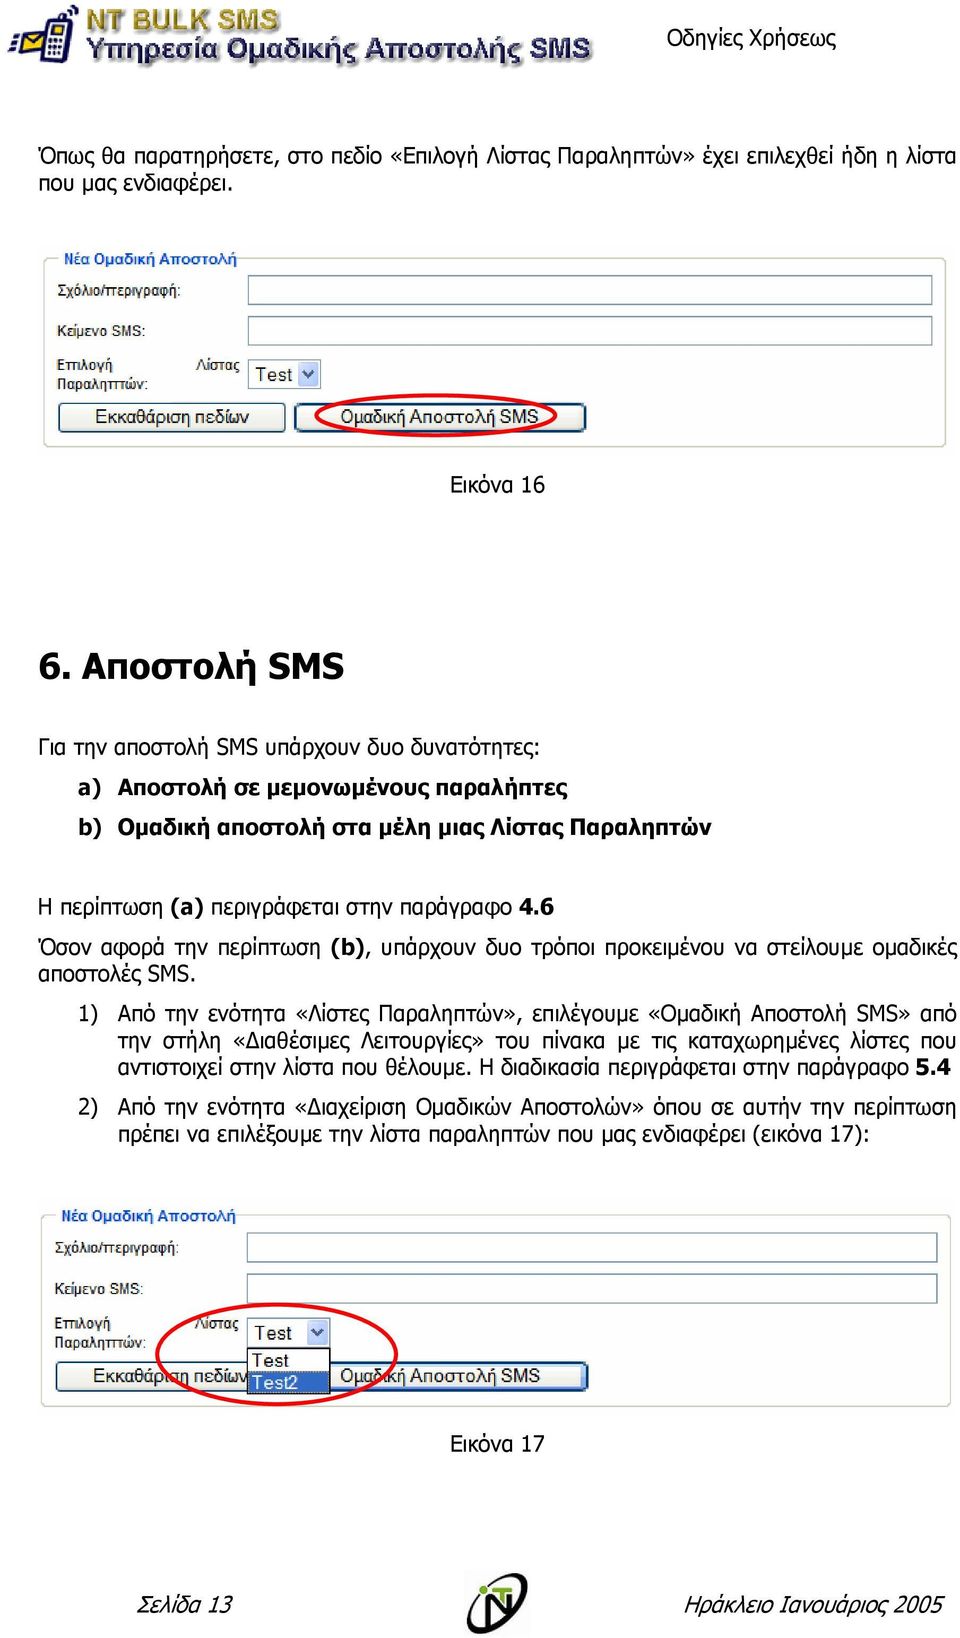 6 Όσον αφορά την περίπτωση (b), υπάρχουν δυο τρόποι προκειµένου να στείλουµε οµαδικές αποστολές SMS.